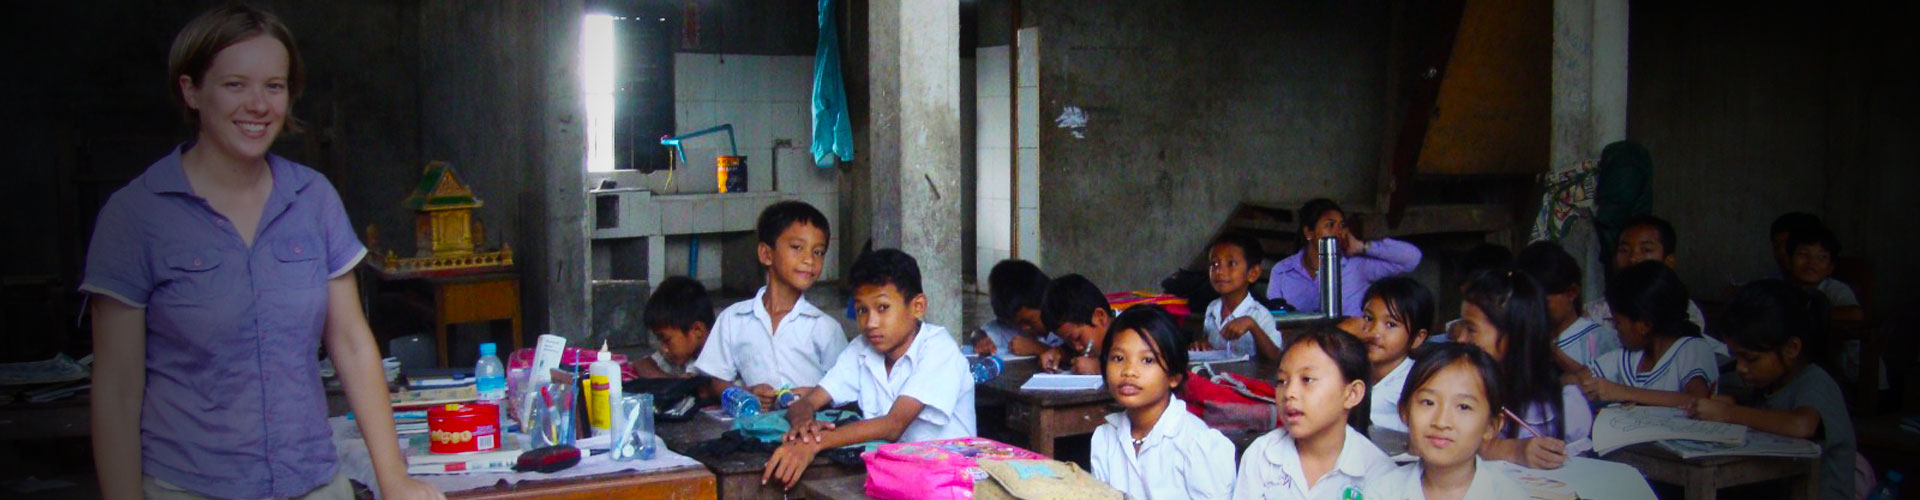 Programa Voluntário de Ensino de Inglês no Camboja